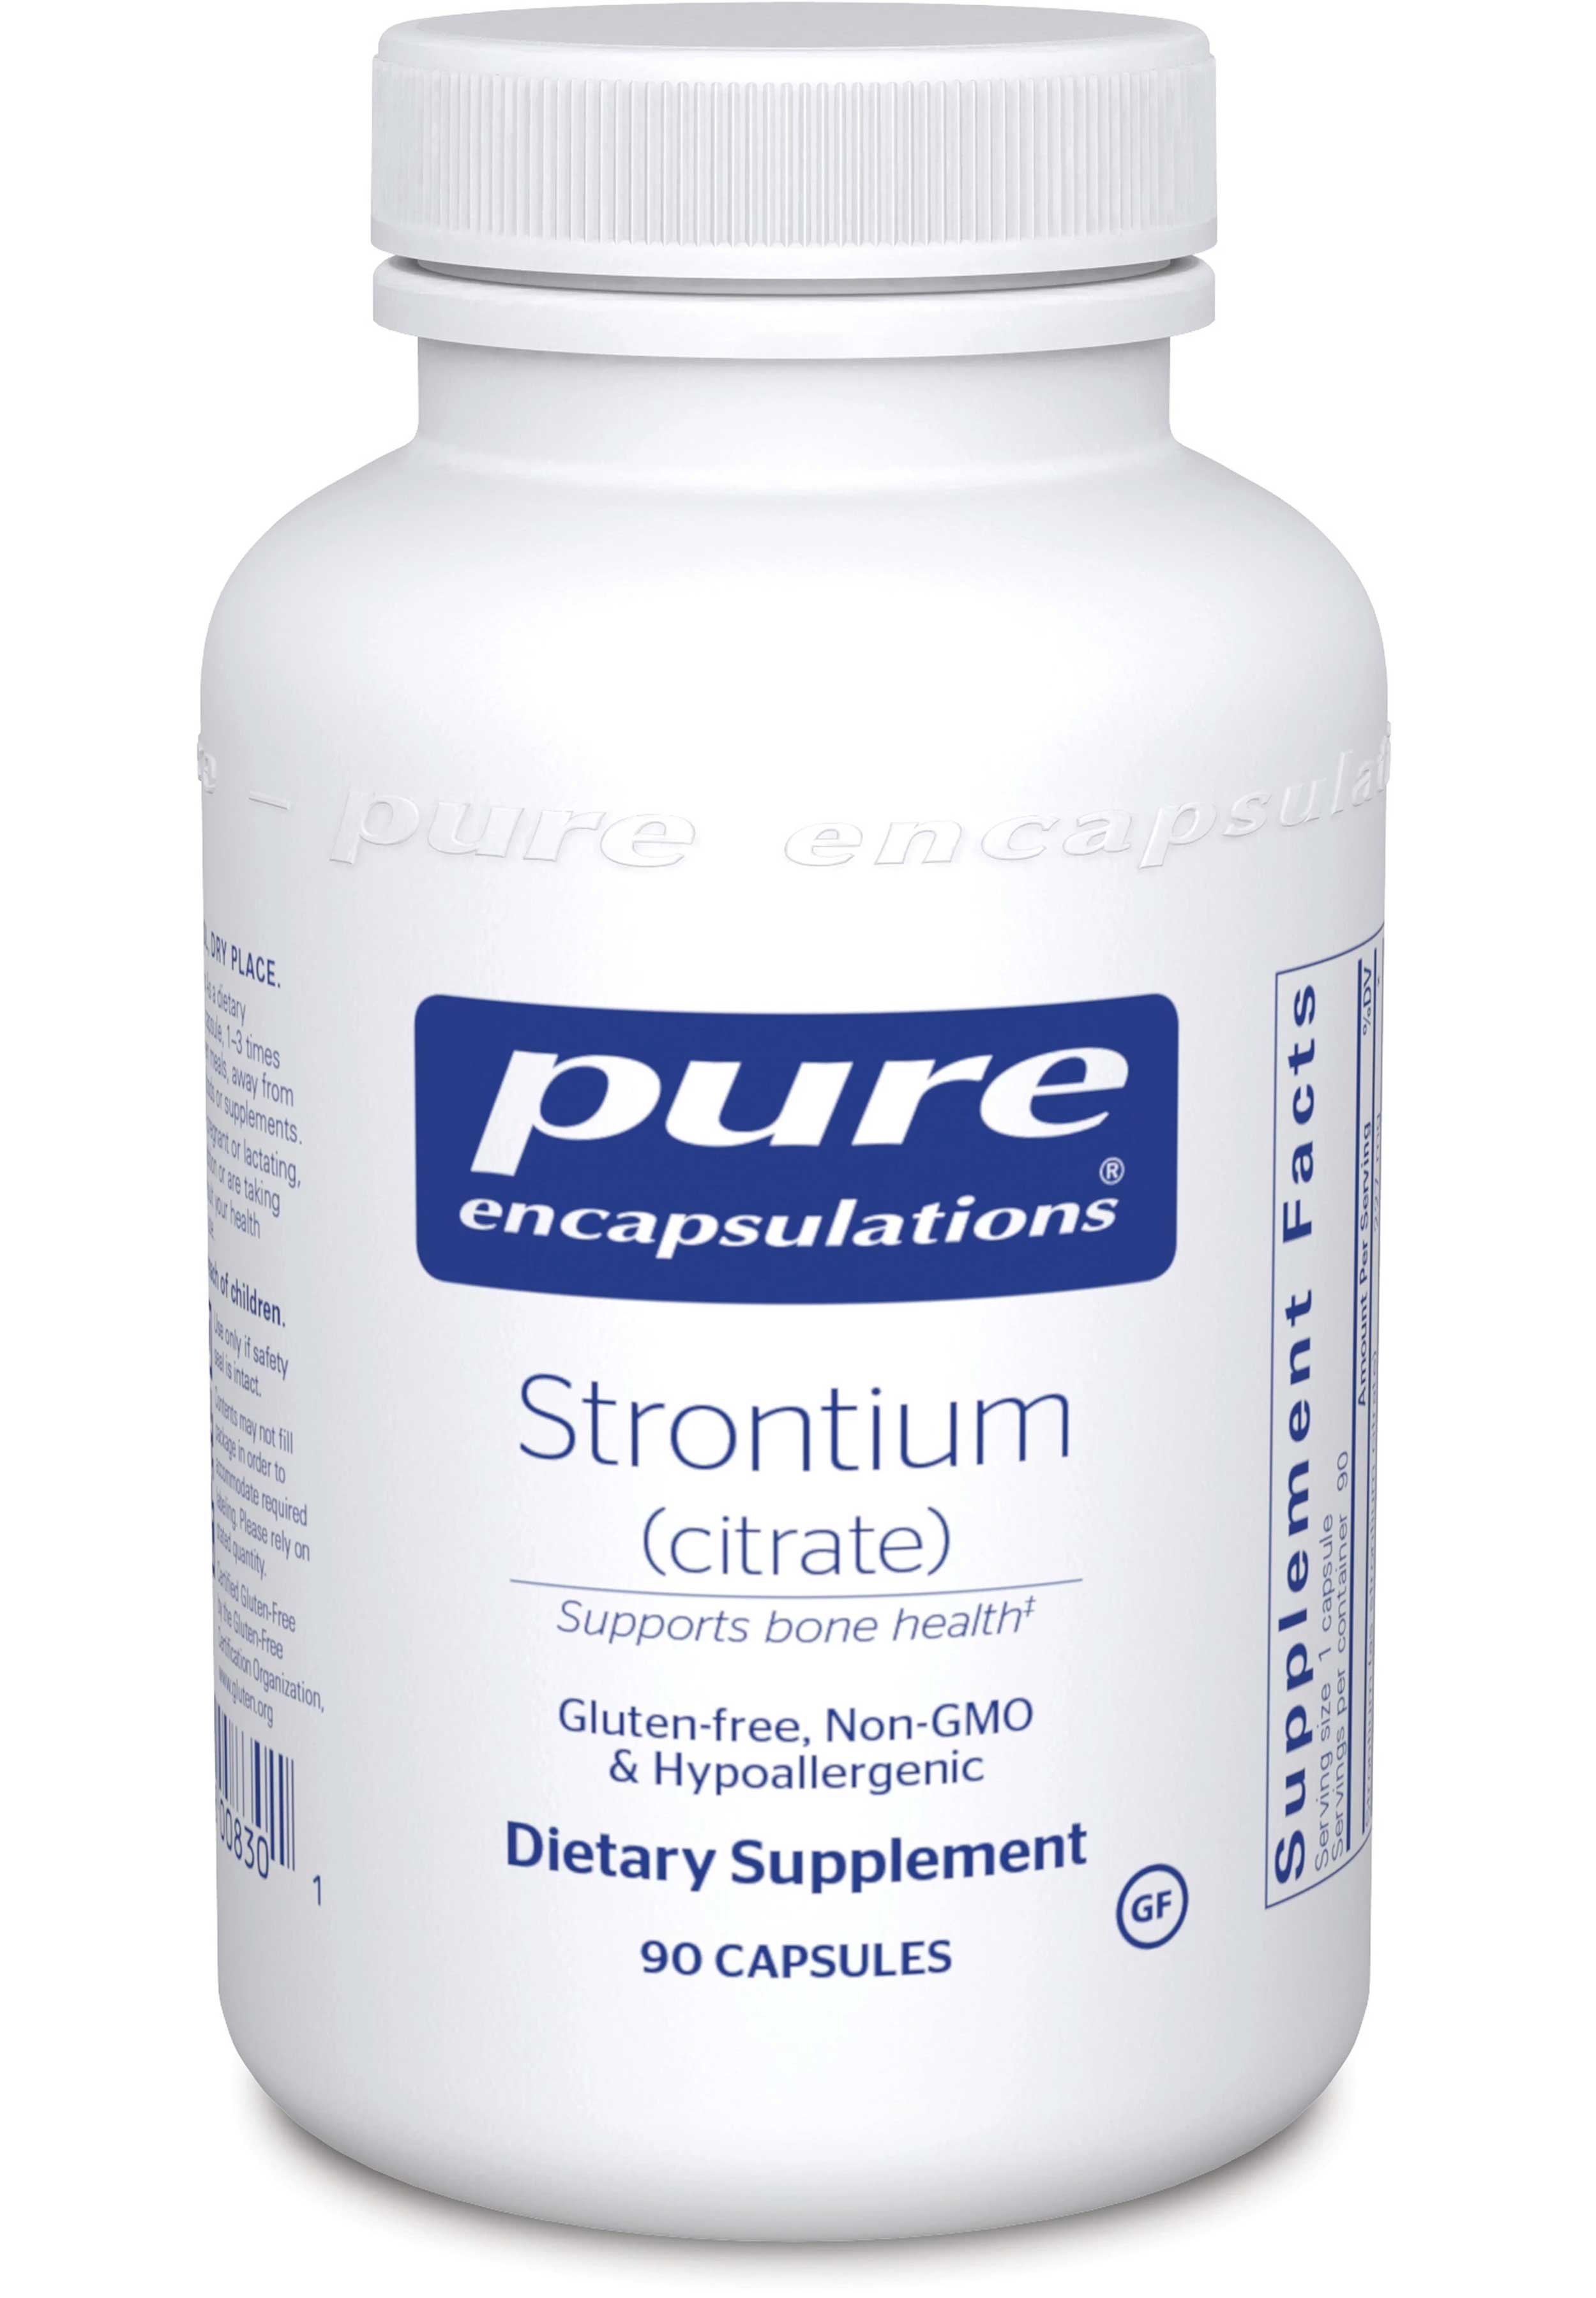 Pure Encapsulations Strontium (citrate)